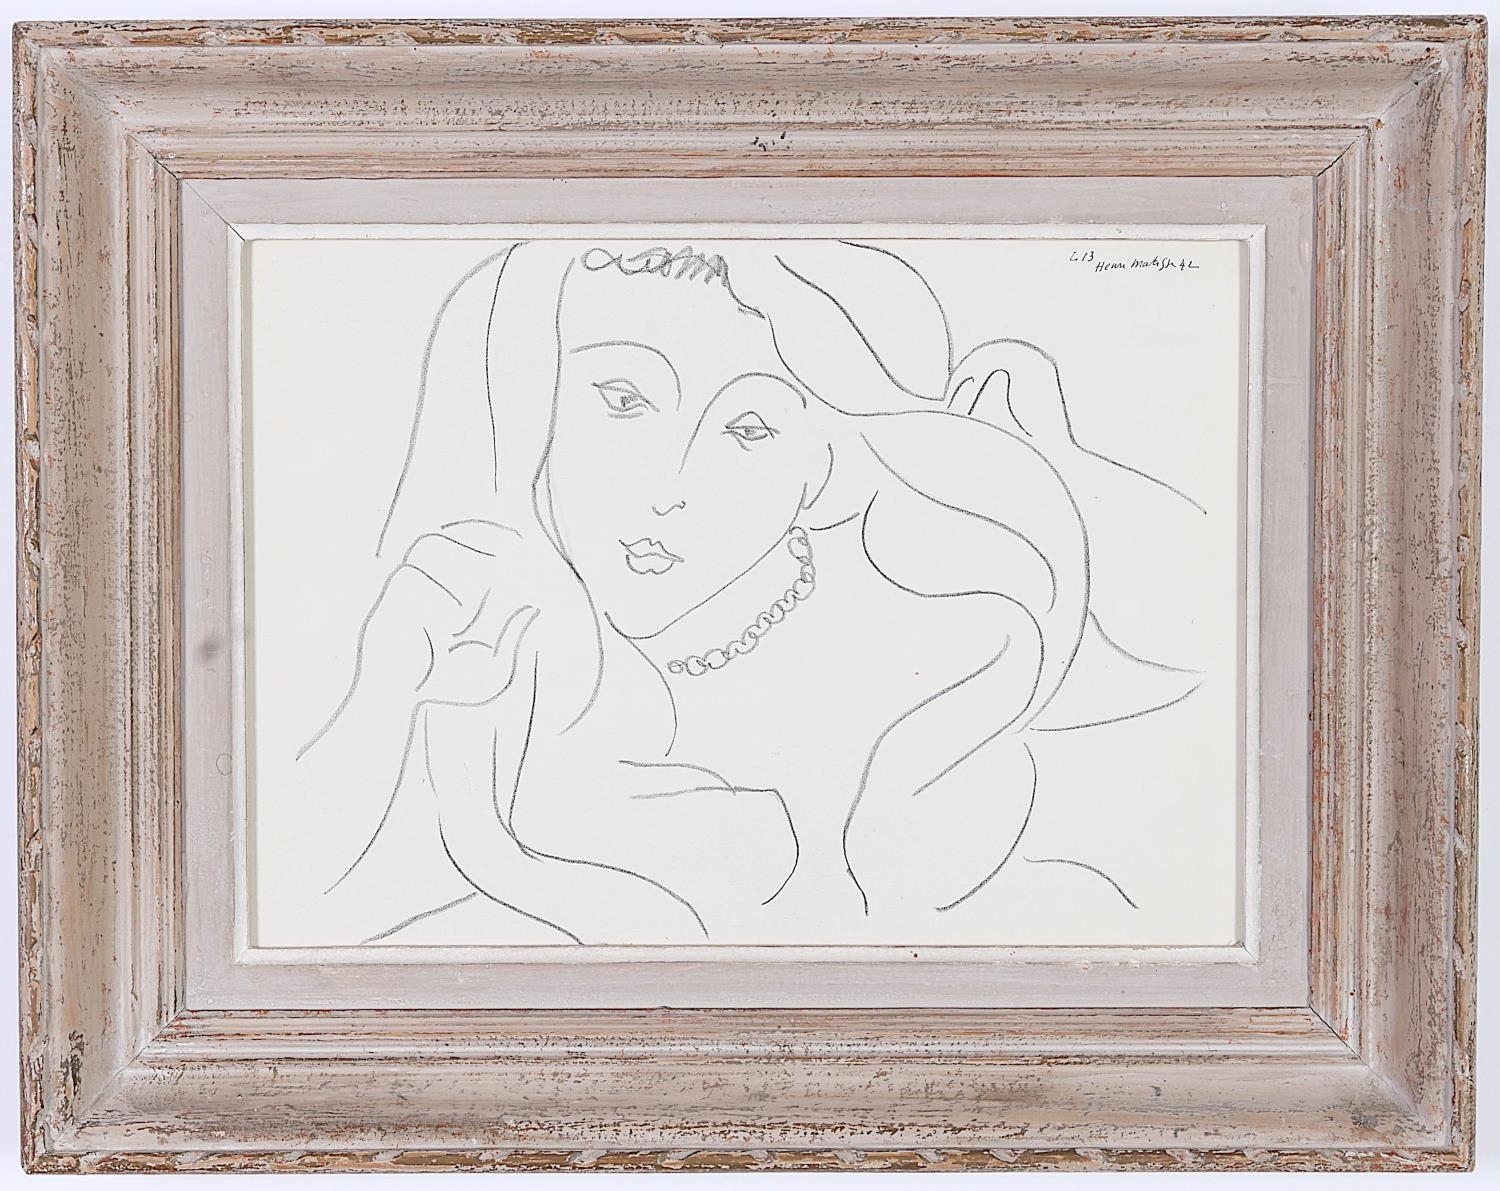 HENRI MATTISE, by Henri Matisse